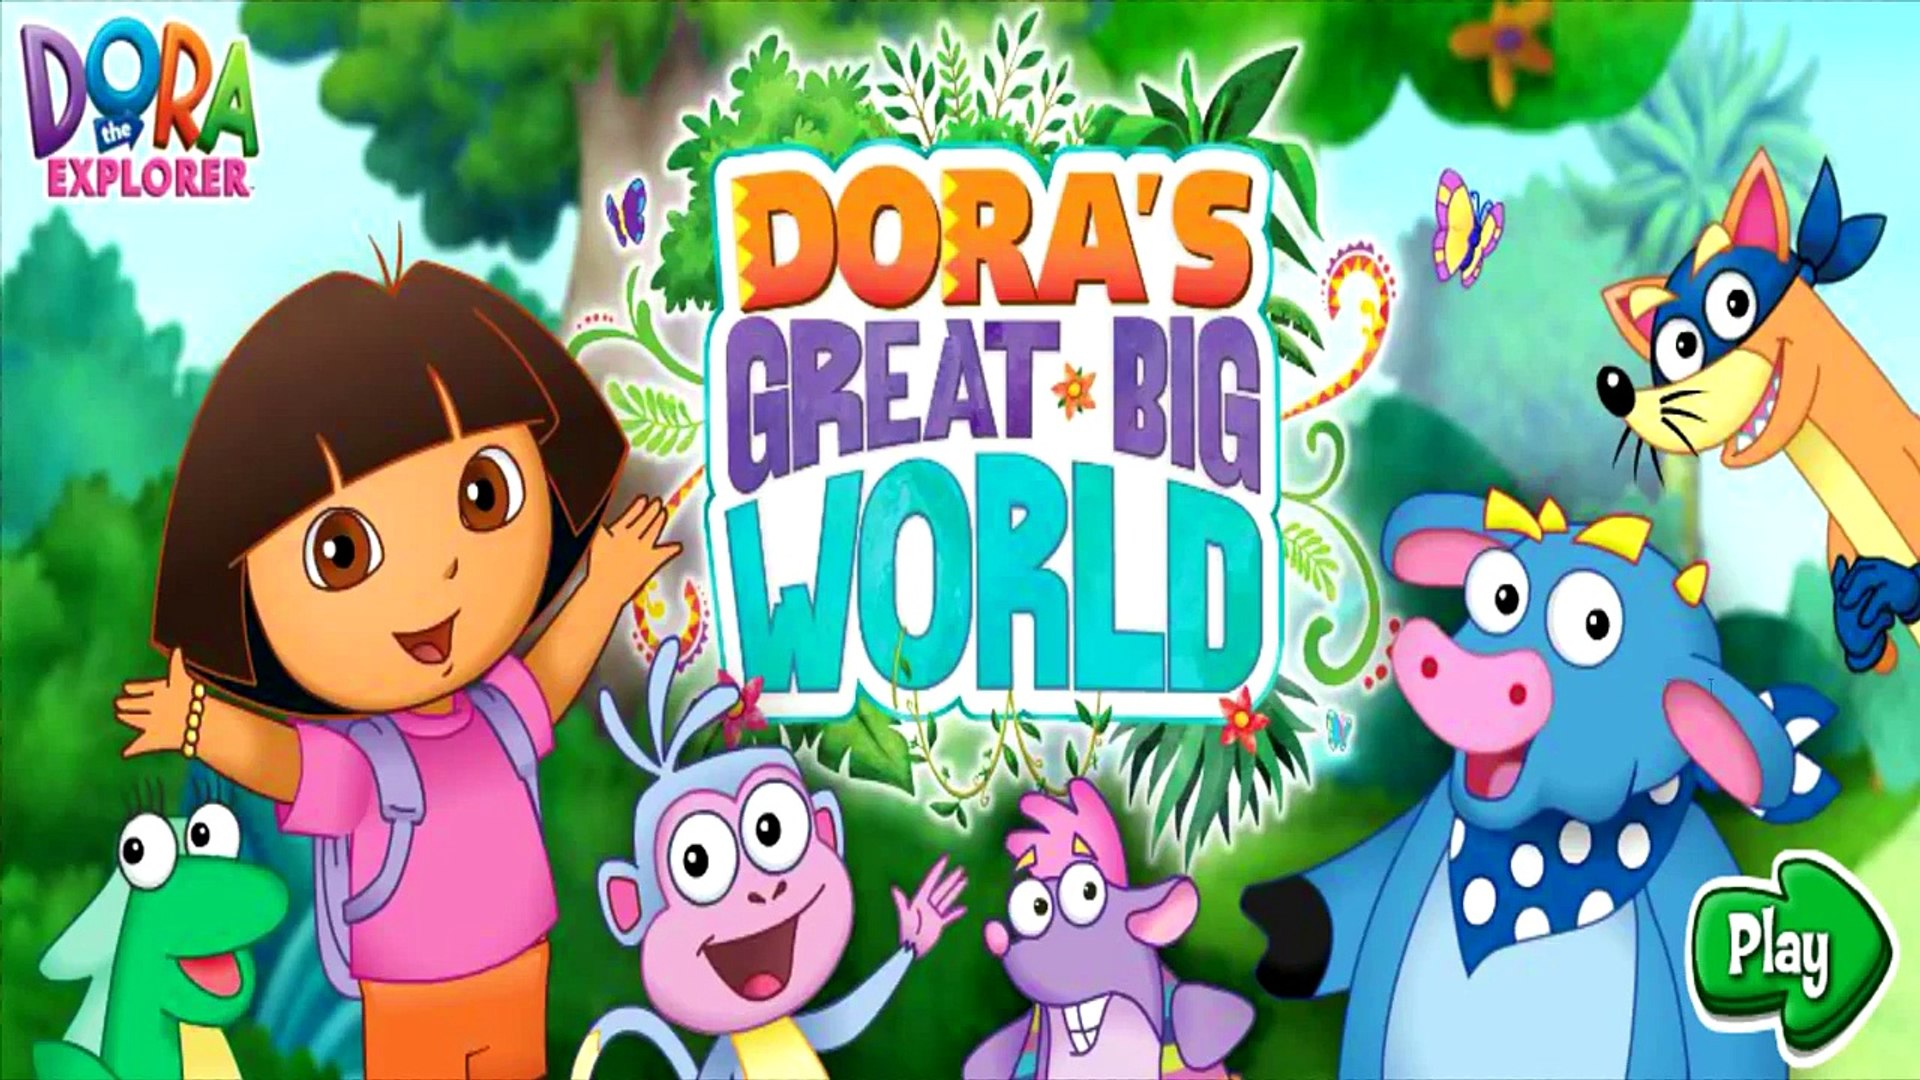 Дора исследователь Дора большой большой мир Часть 1 игры для детей полный HD детские видео